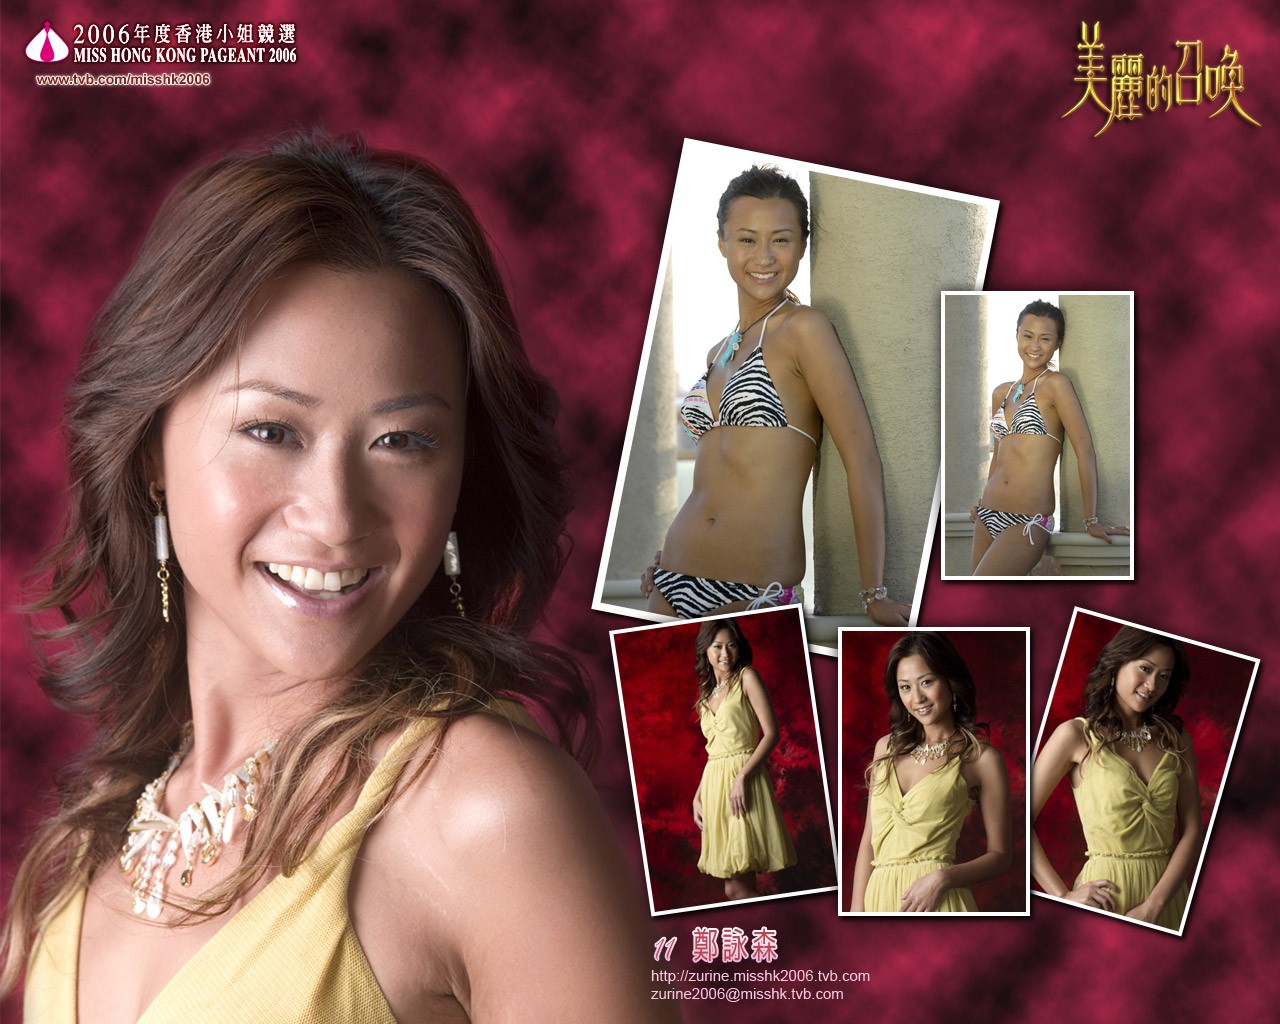 2006 Miss Hong Kong Album #6 - 1280x1024